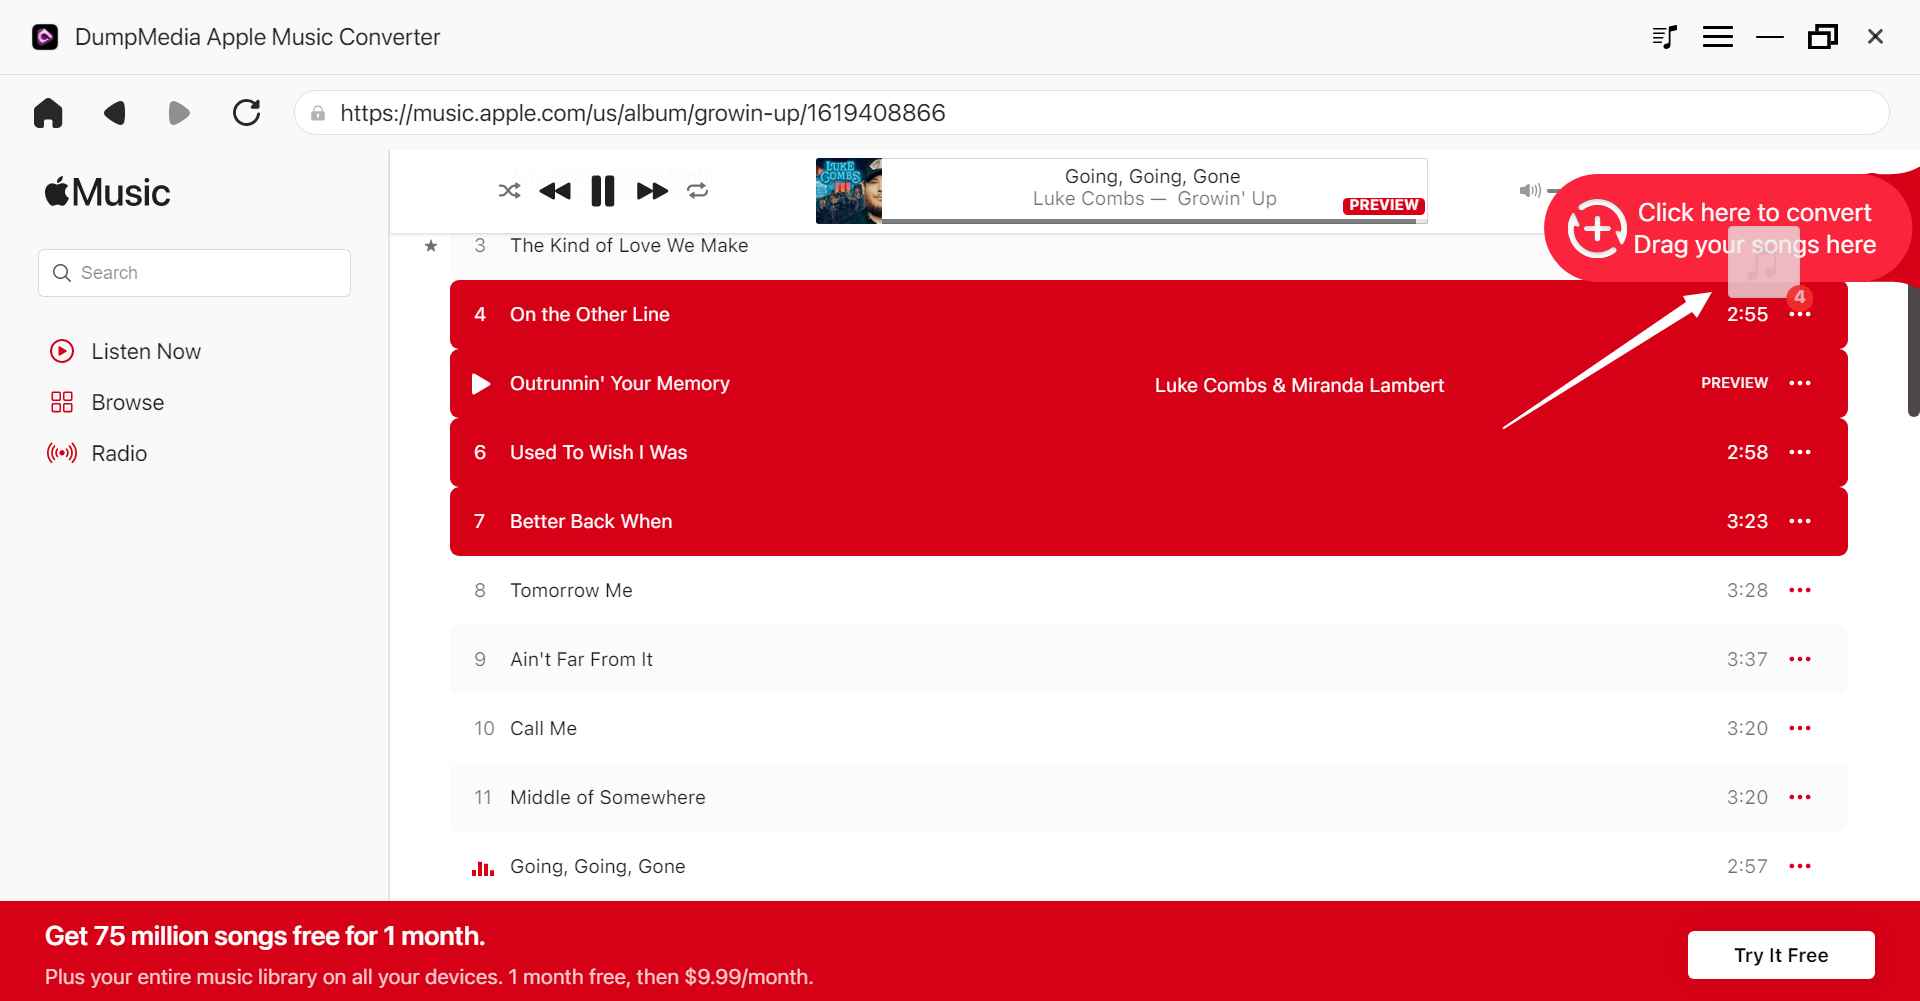 Il miglior software Apple Music Converter: DumpMedia Apple Music Converter - Aggiungi file